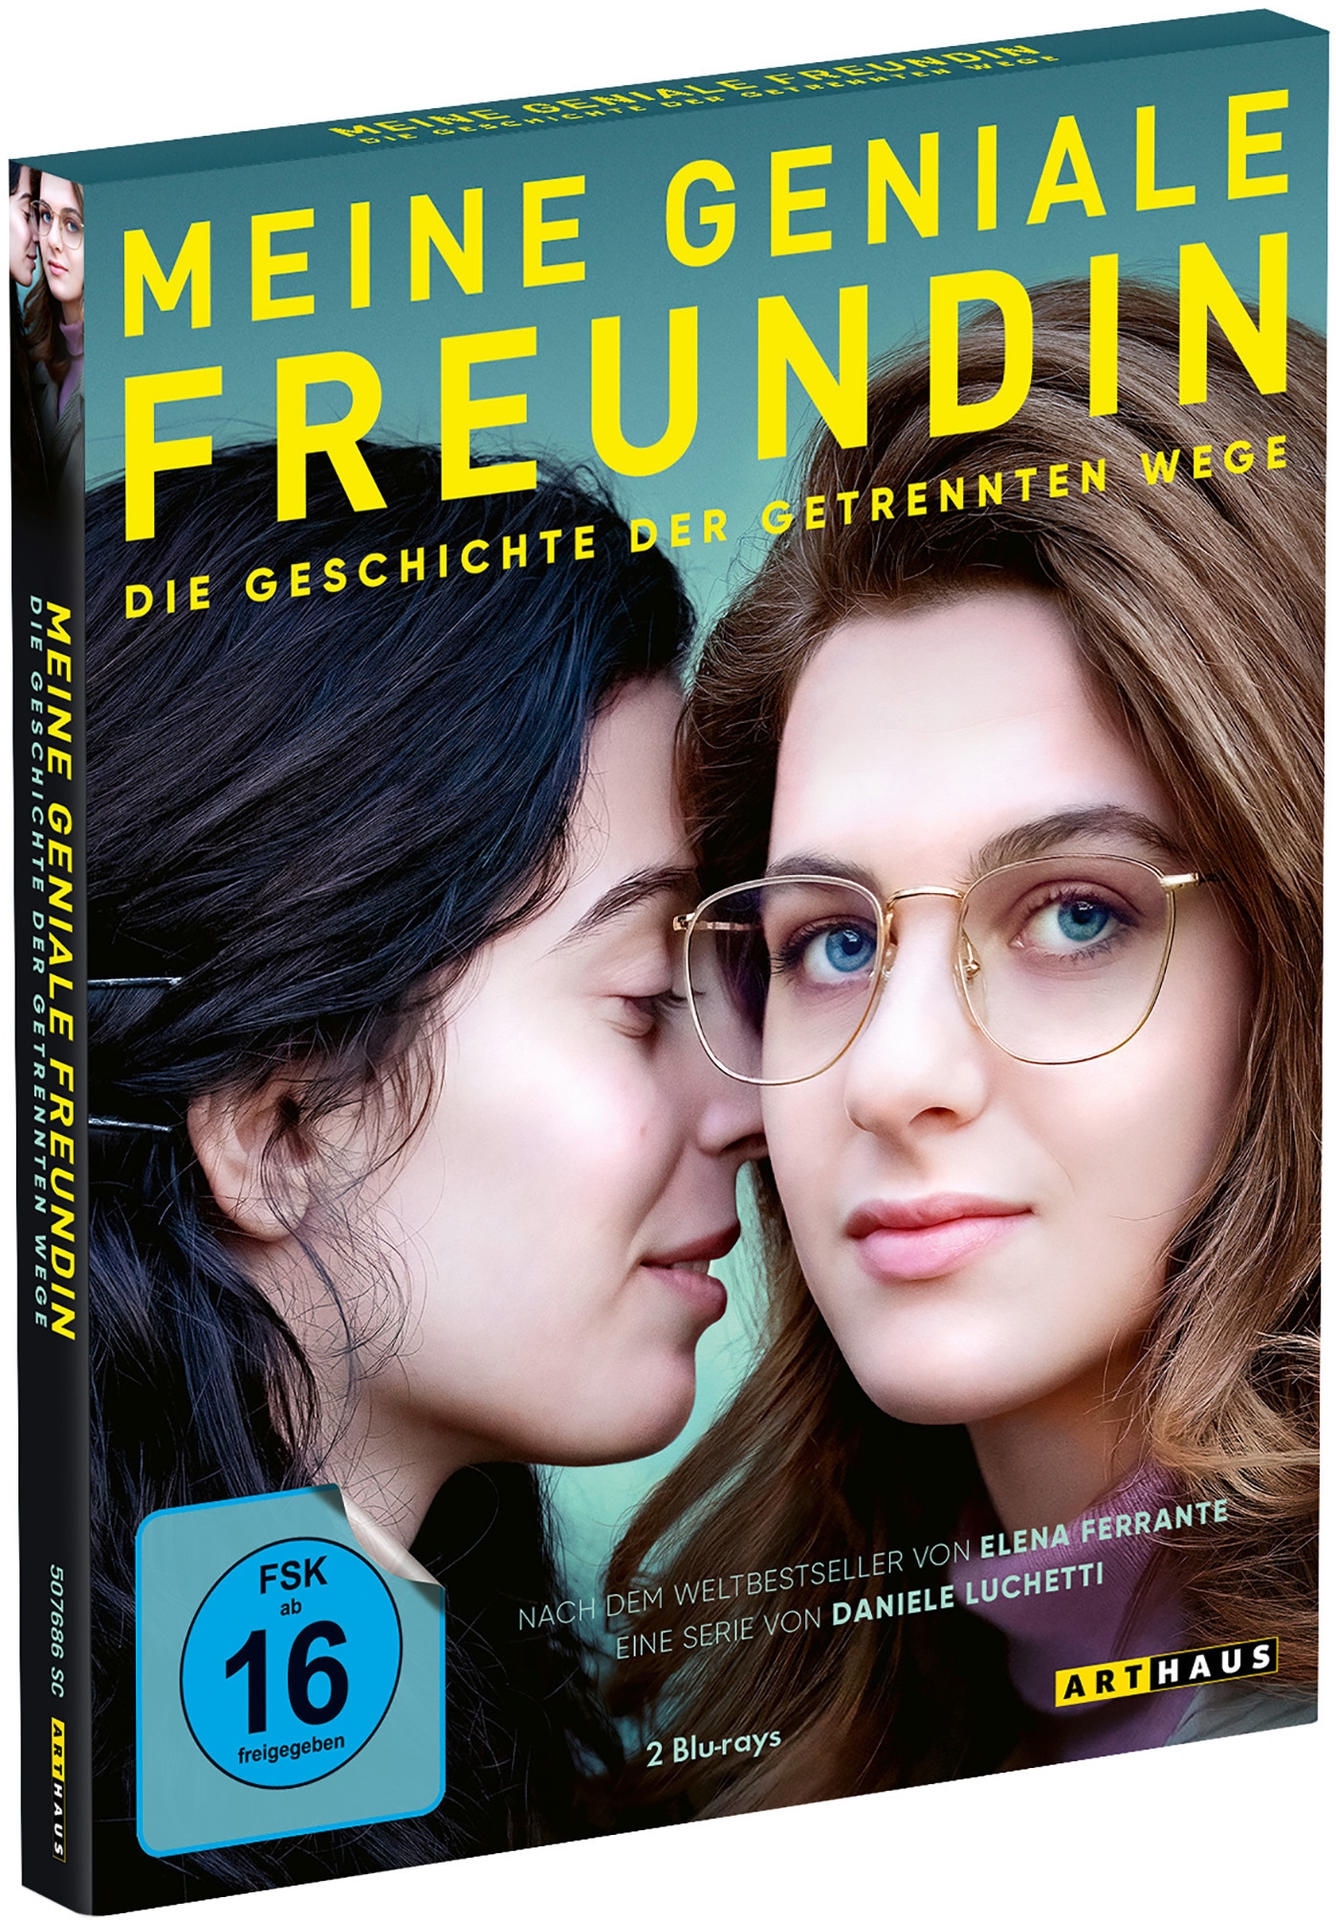 Meine geniale der - 3 Wege - getrennten Geschichte Die Freundin Staffel Blu-ray